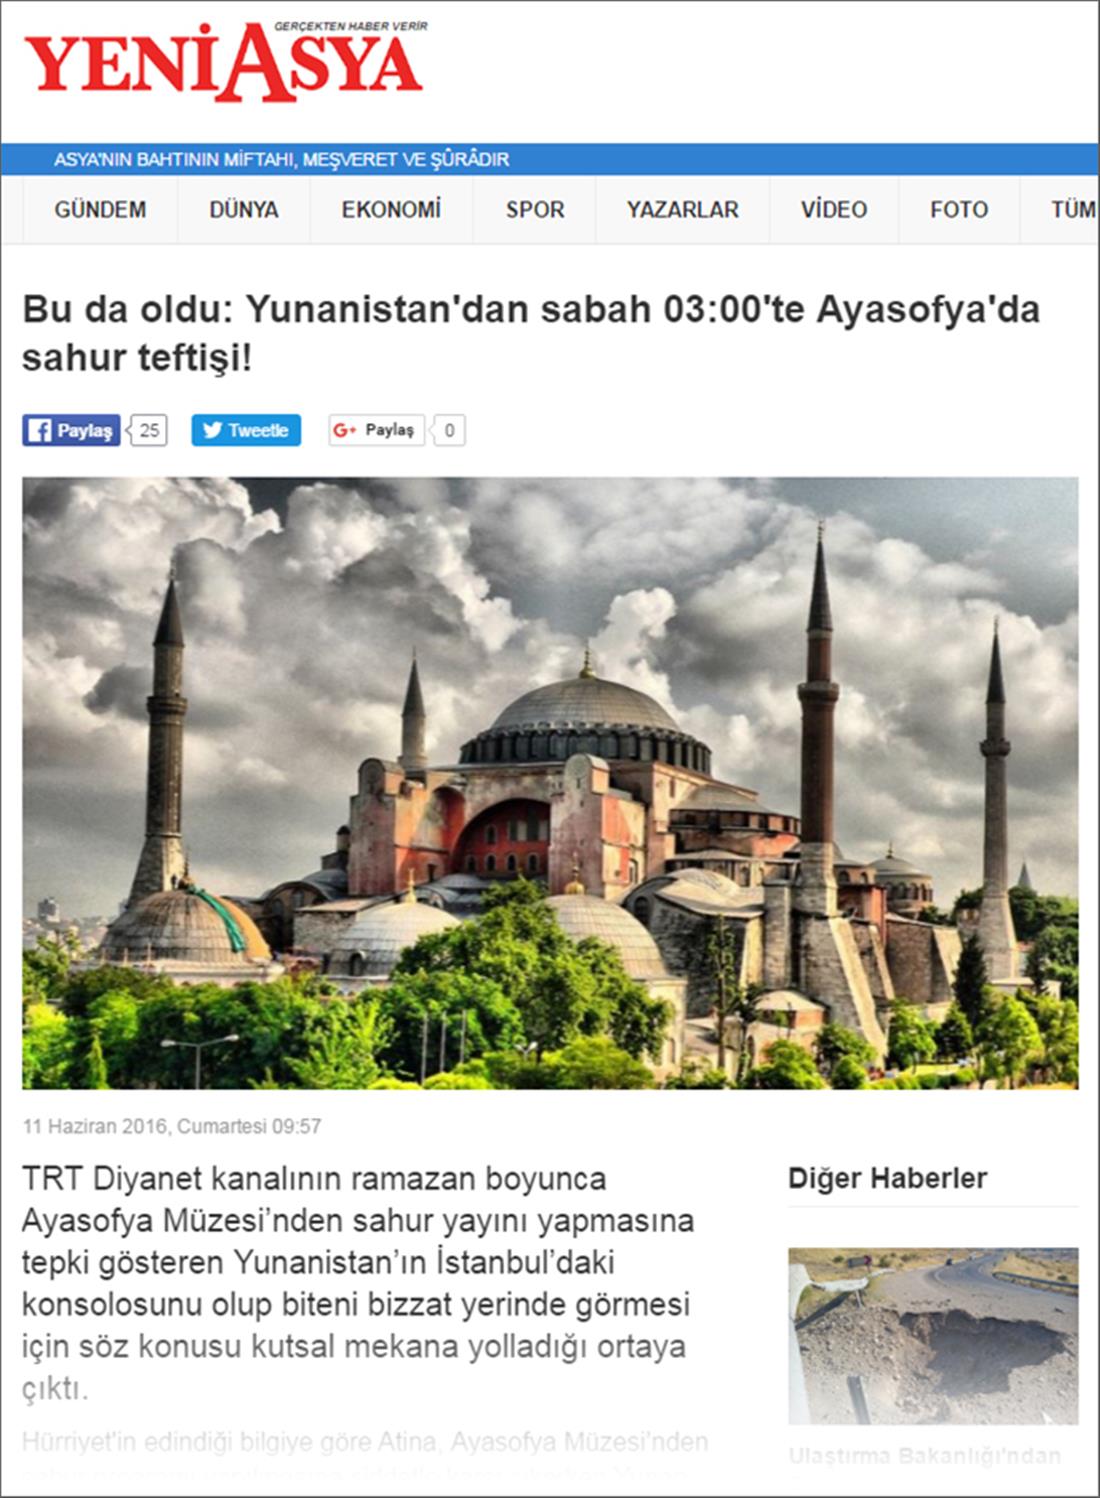 Τουρκικός Τύπος - Γενικός Πρόξενος της Ελλάδας - Κωνσταντινούπολη - Ευάγγελος Σέκερης - Αγιά Σοφιά